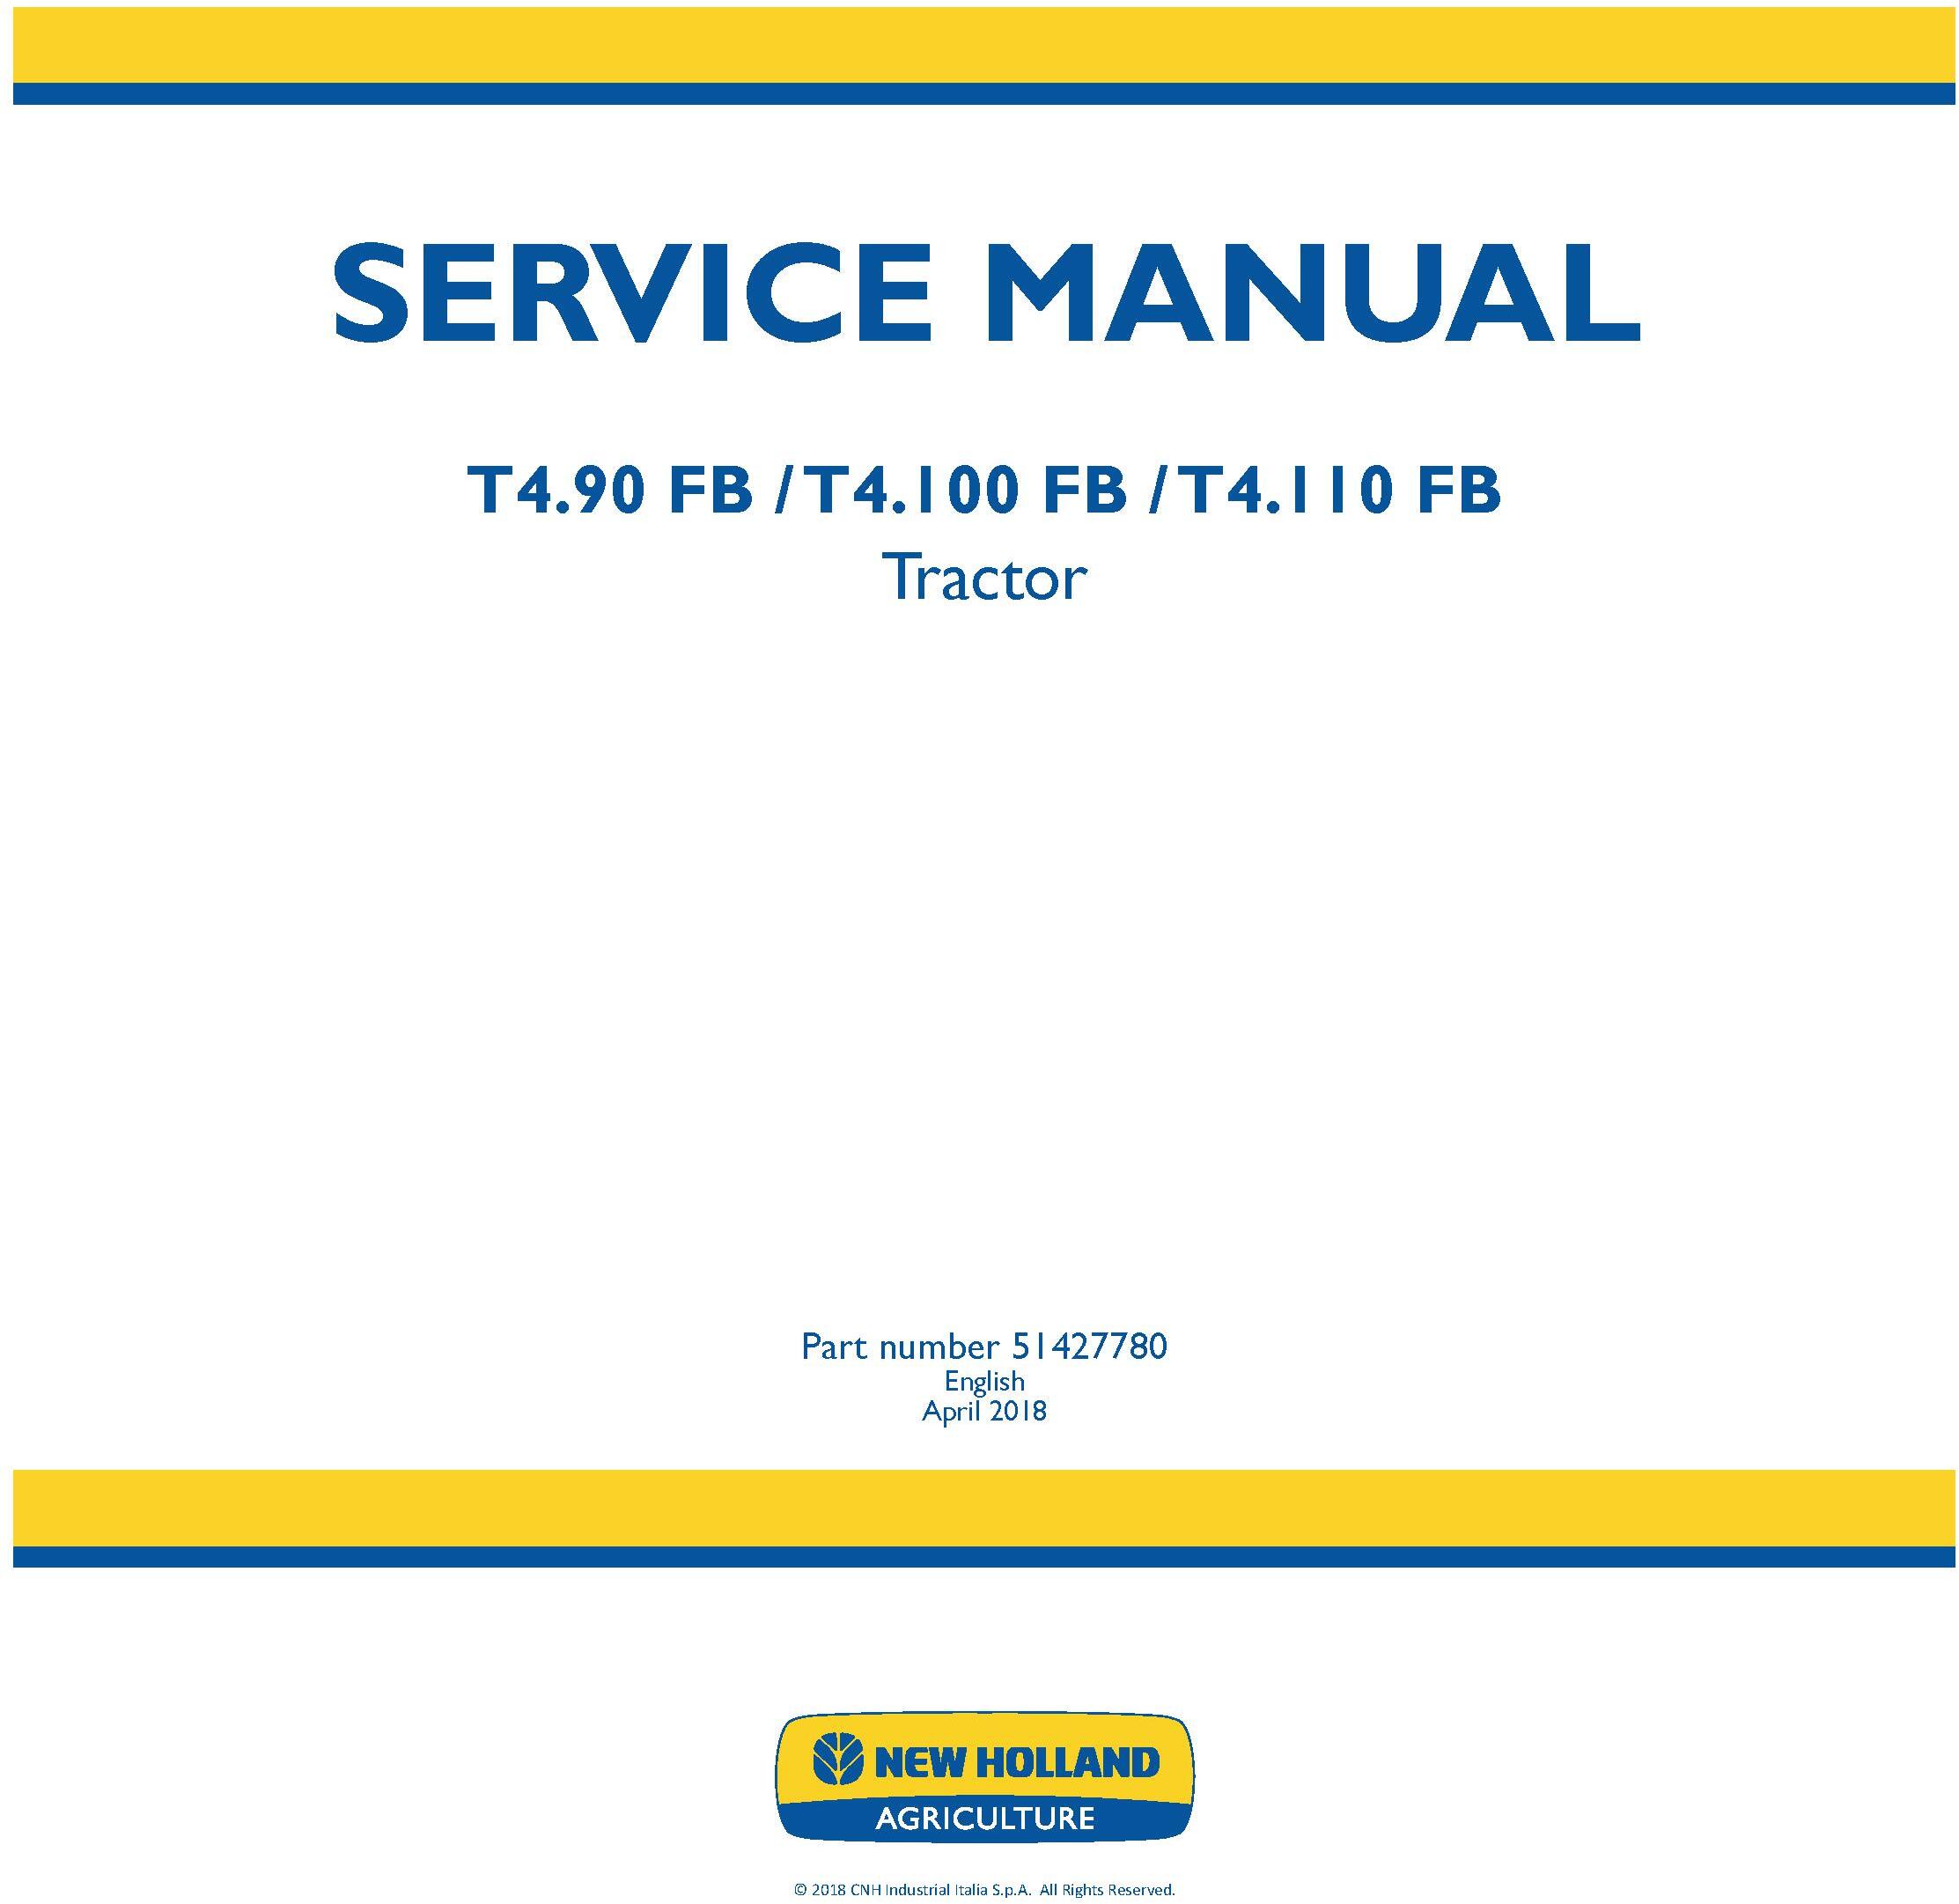 New Holland T4.90 FB, T4.100 FB, T4.110 FB Tractor Service Manual - 19510